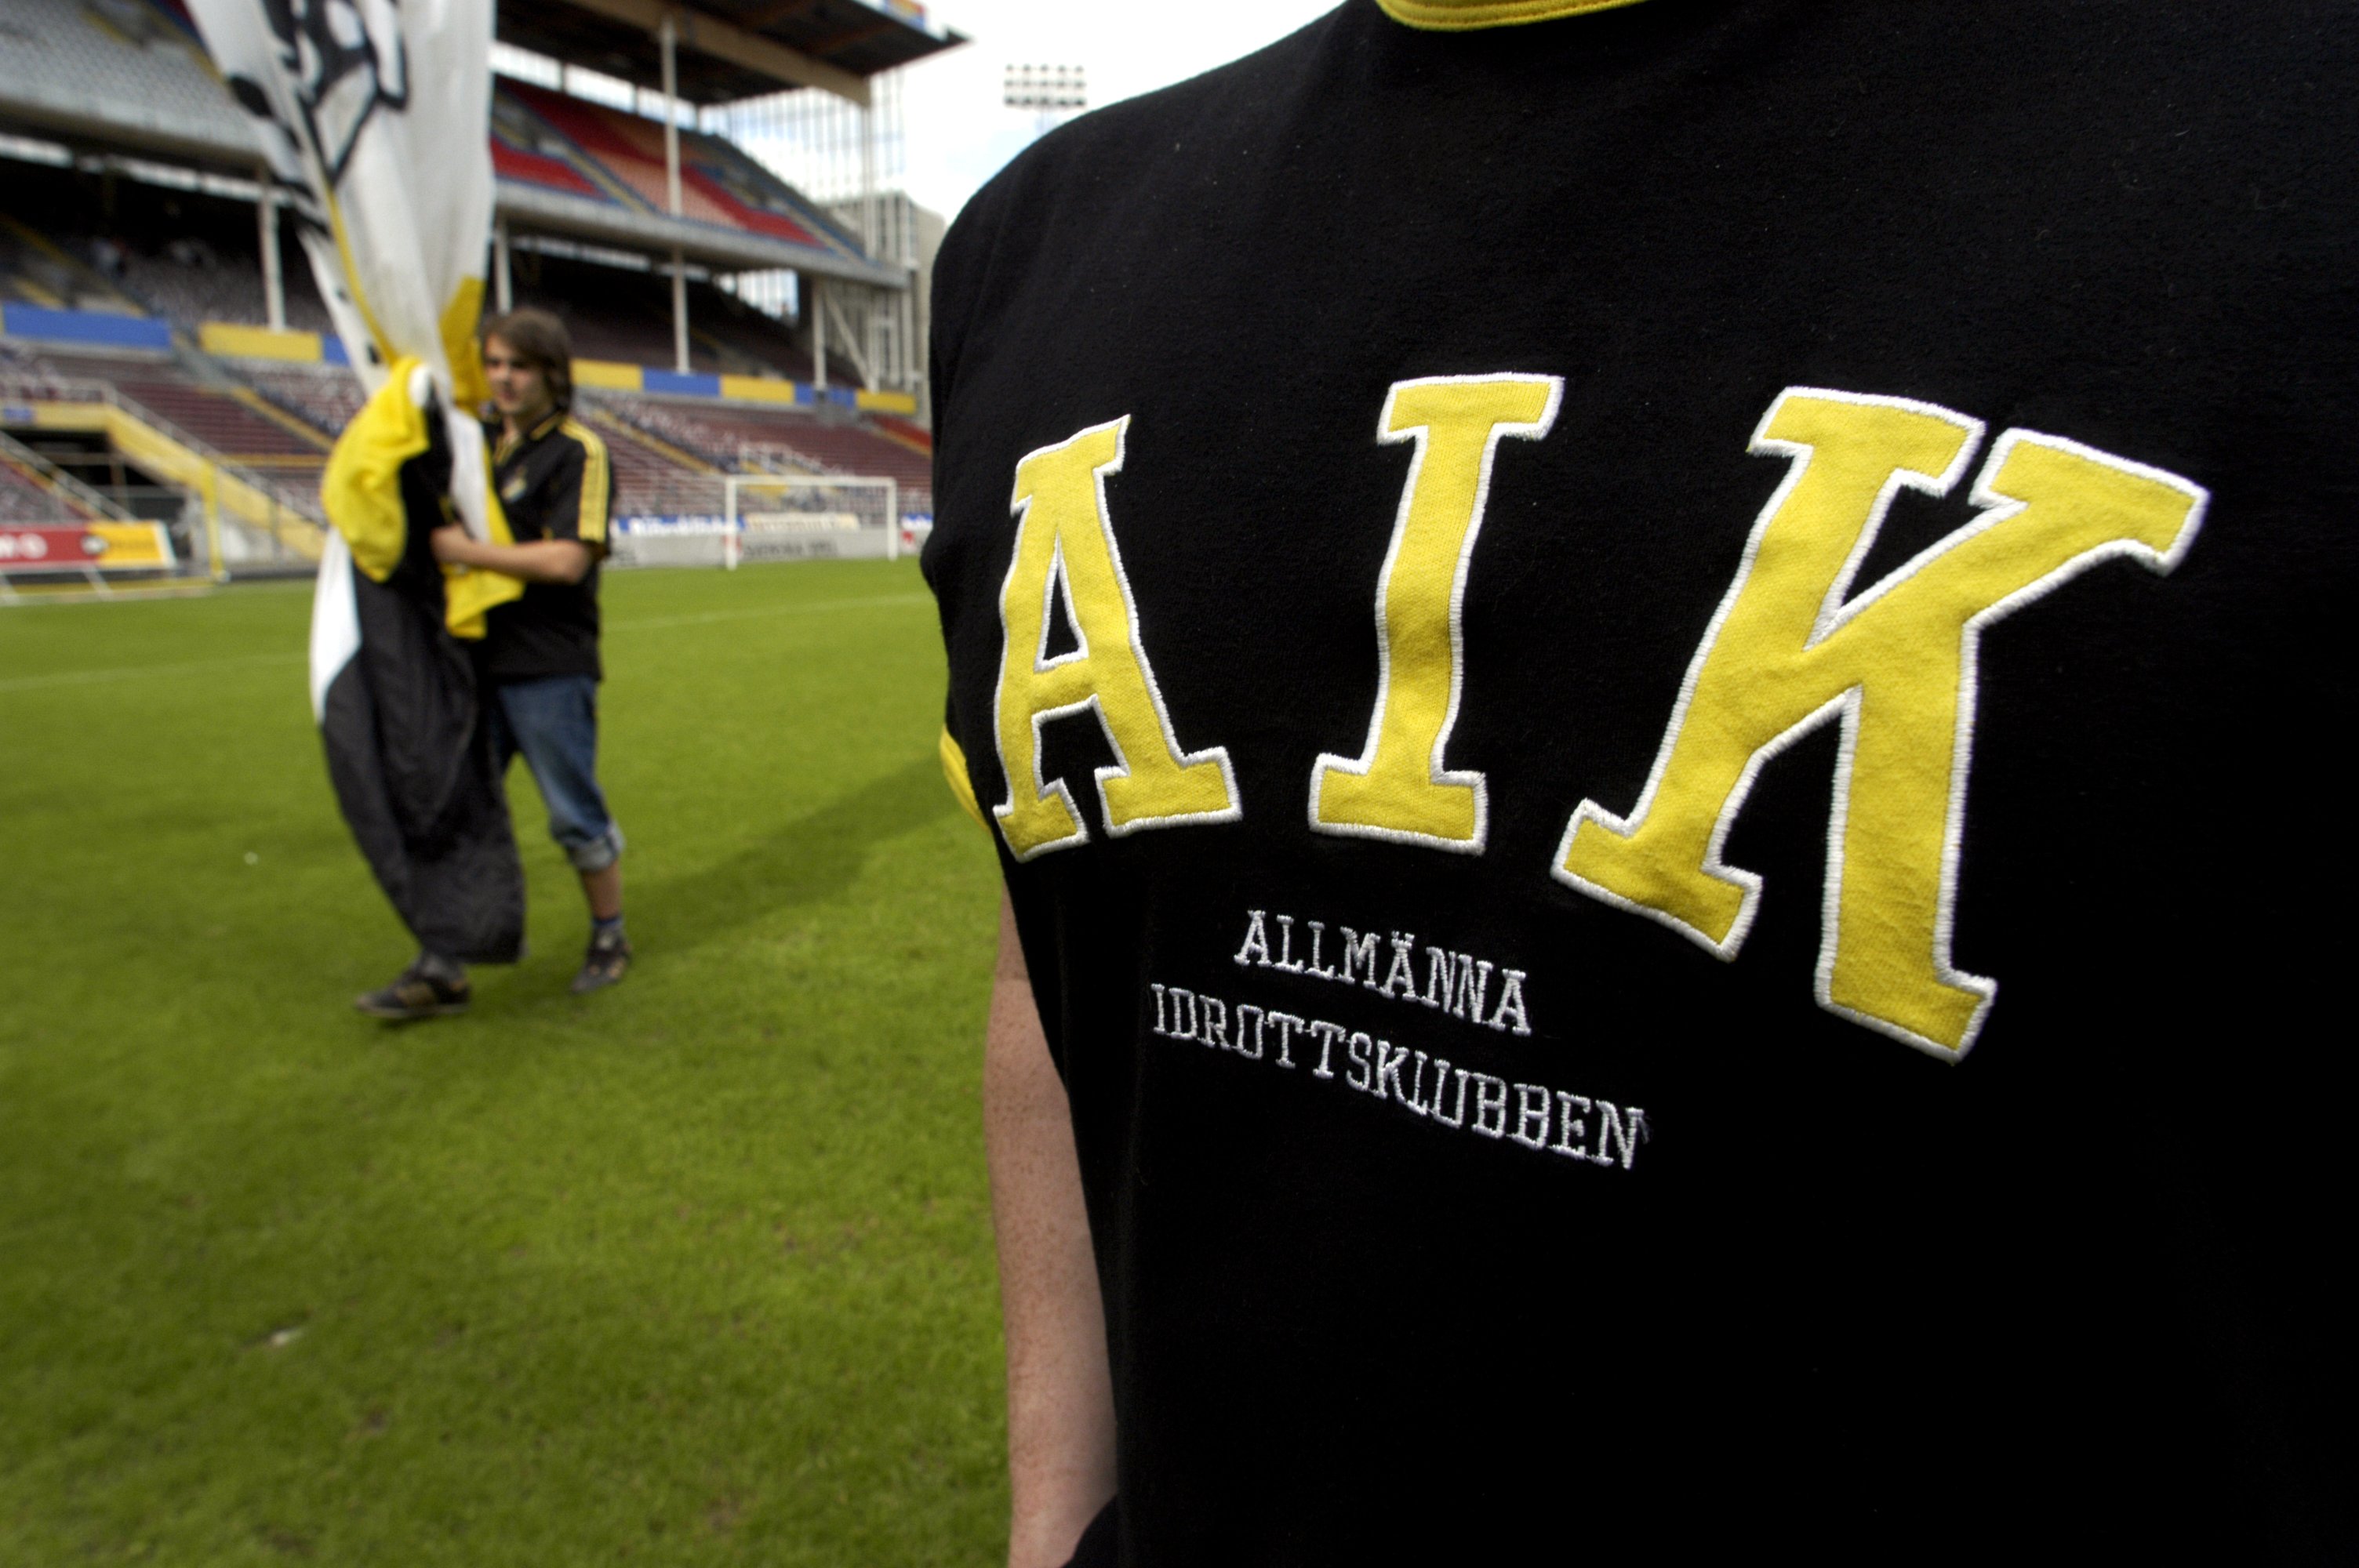 AIK spelar ett sista och ångestladdat hemmaderby på Råsundastadion. Nyheter24 bjuder därför på en bildspecial från bildarkivet där många av topparna, dalarna och skandaler gestaltas. Med andra ord kastar vi oss ut i en nostalgitripp runt Solna.